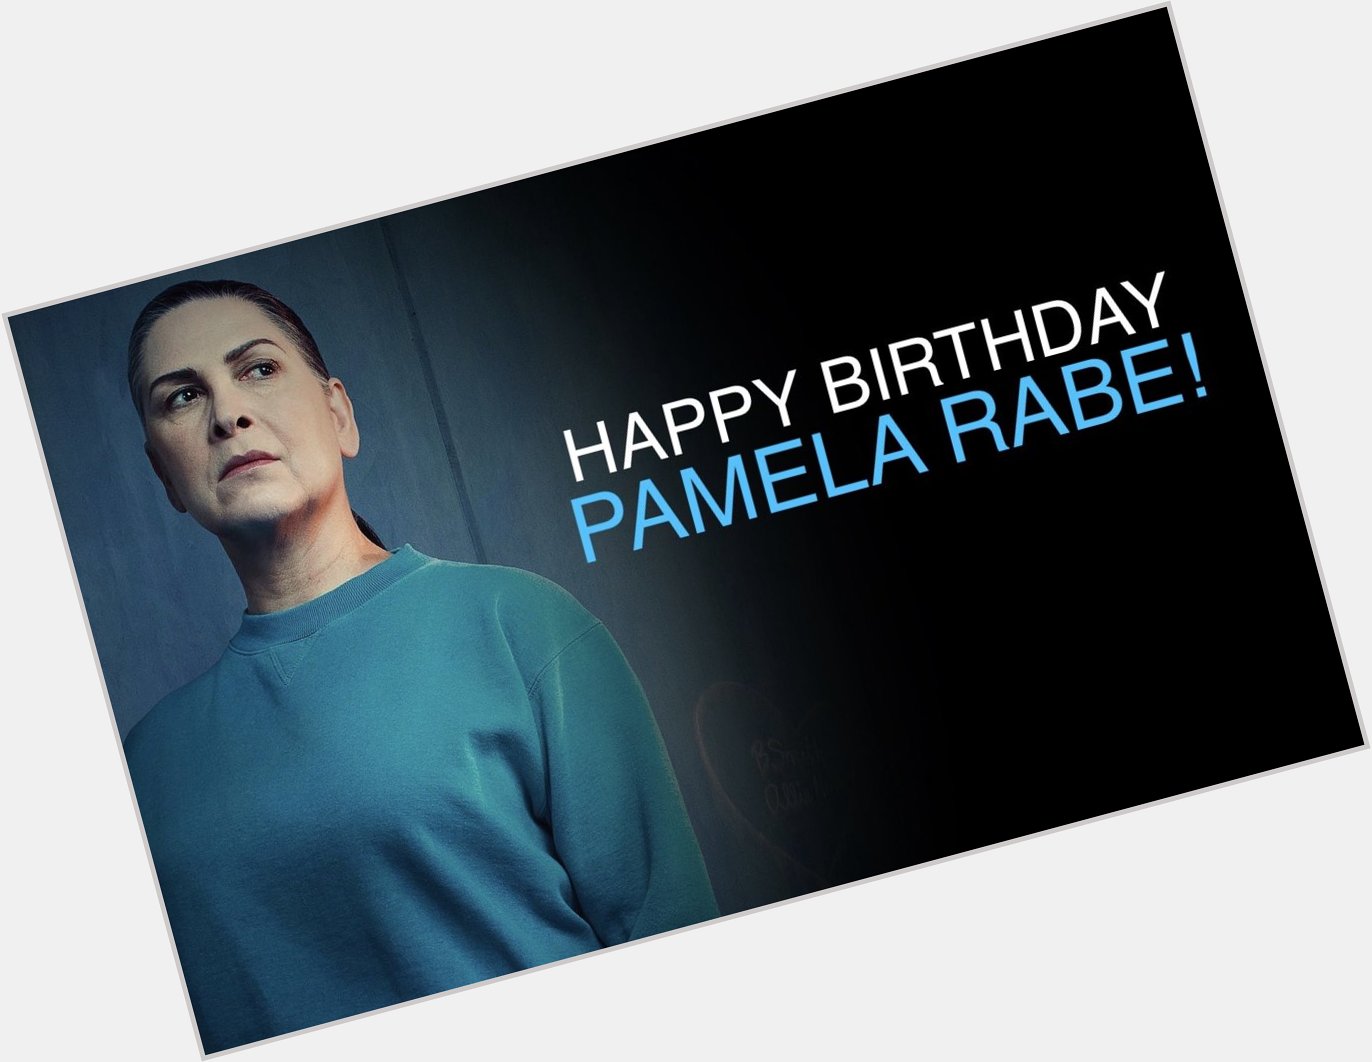 Happy Birthday Pamela Rabe! 